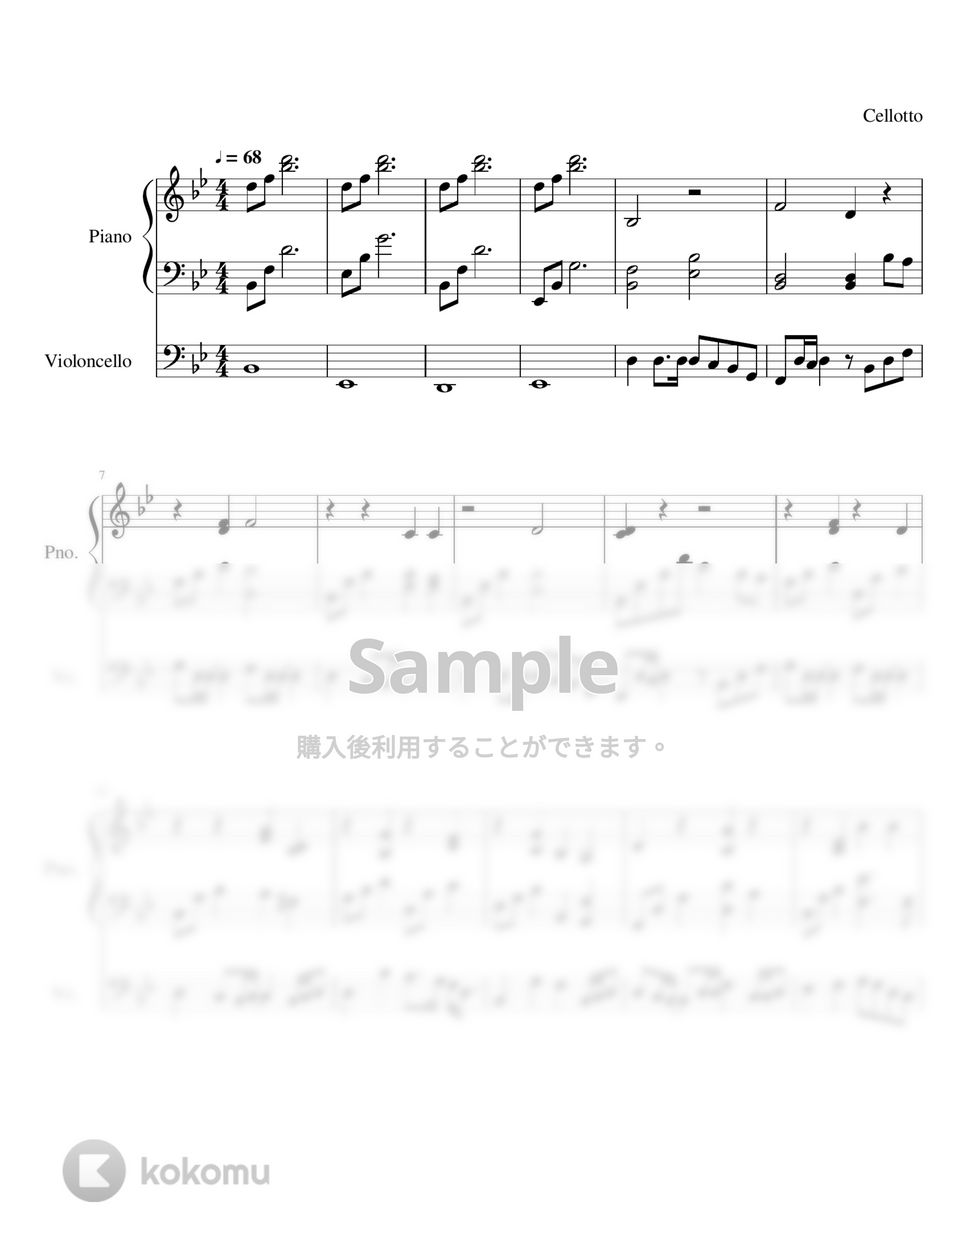 中島みゆき - 糸 (チェロとピアノ伴奏) by Cellotto